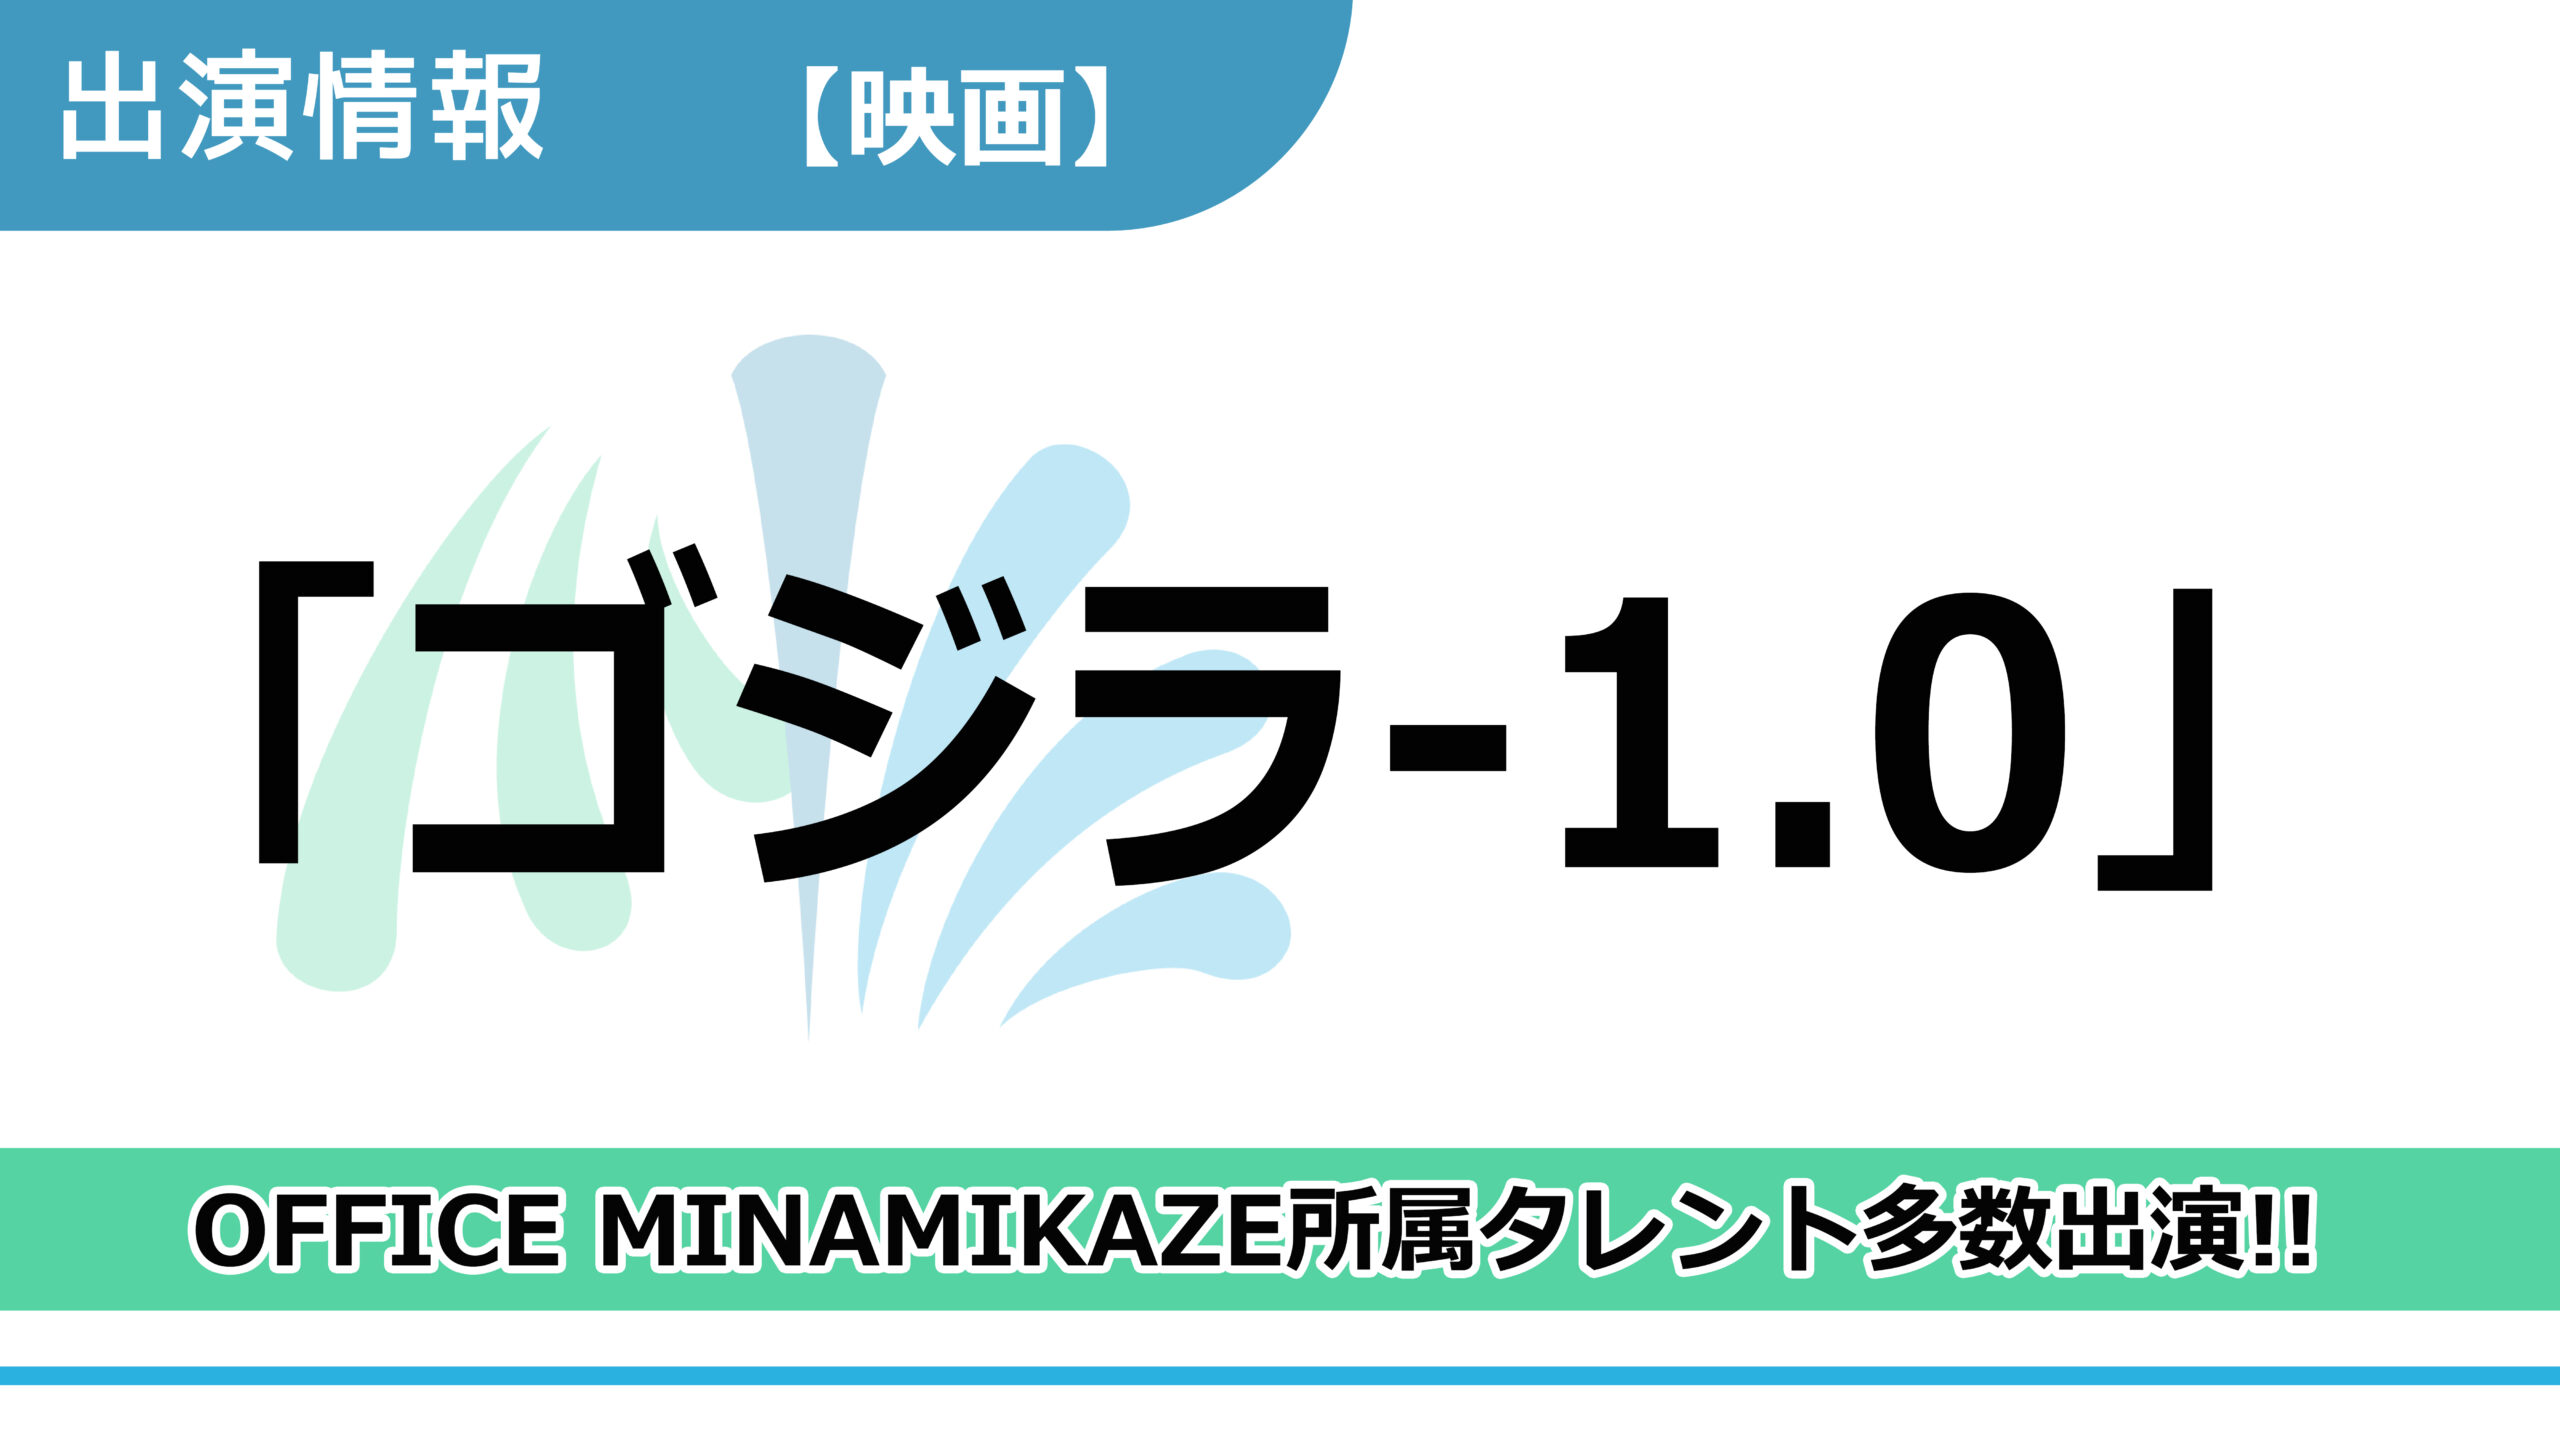 【出演情報】OFFICE MINAMIKAZE所属タレント多数出演 / 映画「ゴジラ-1.0」